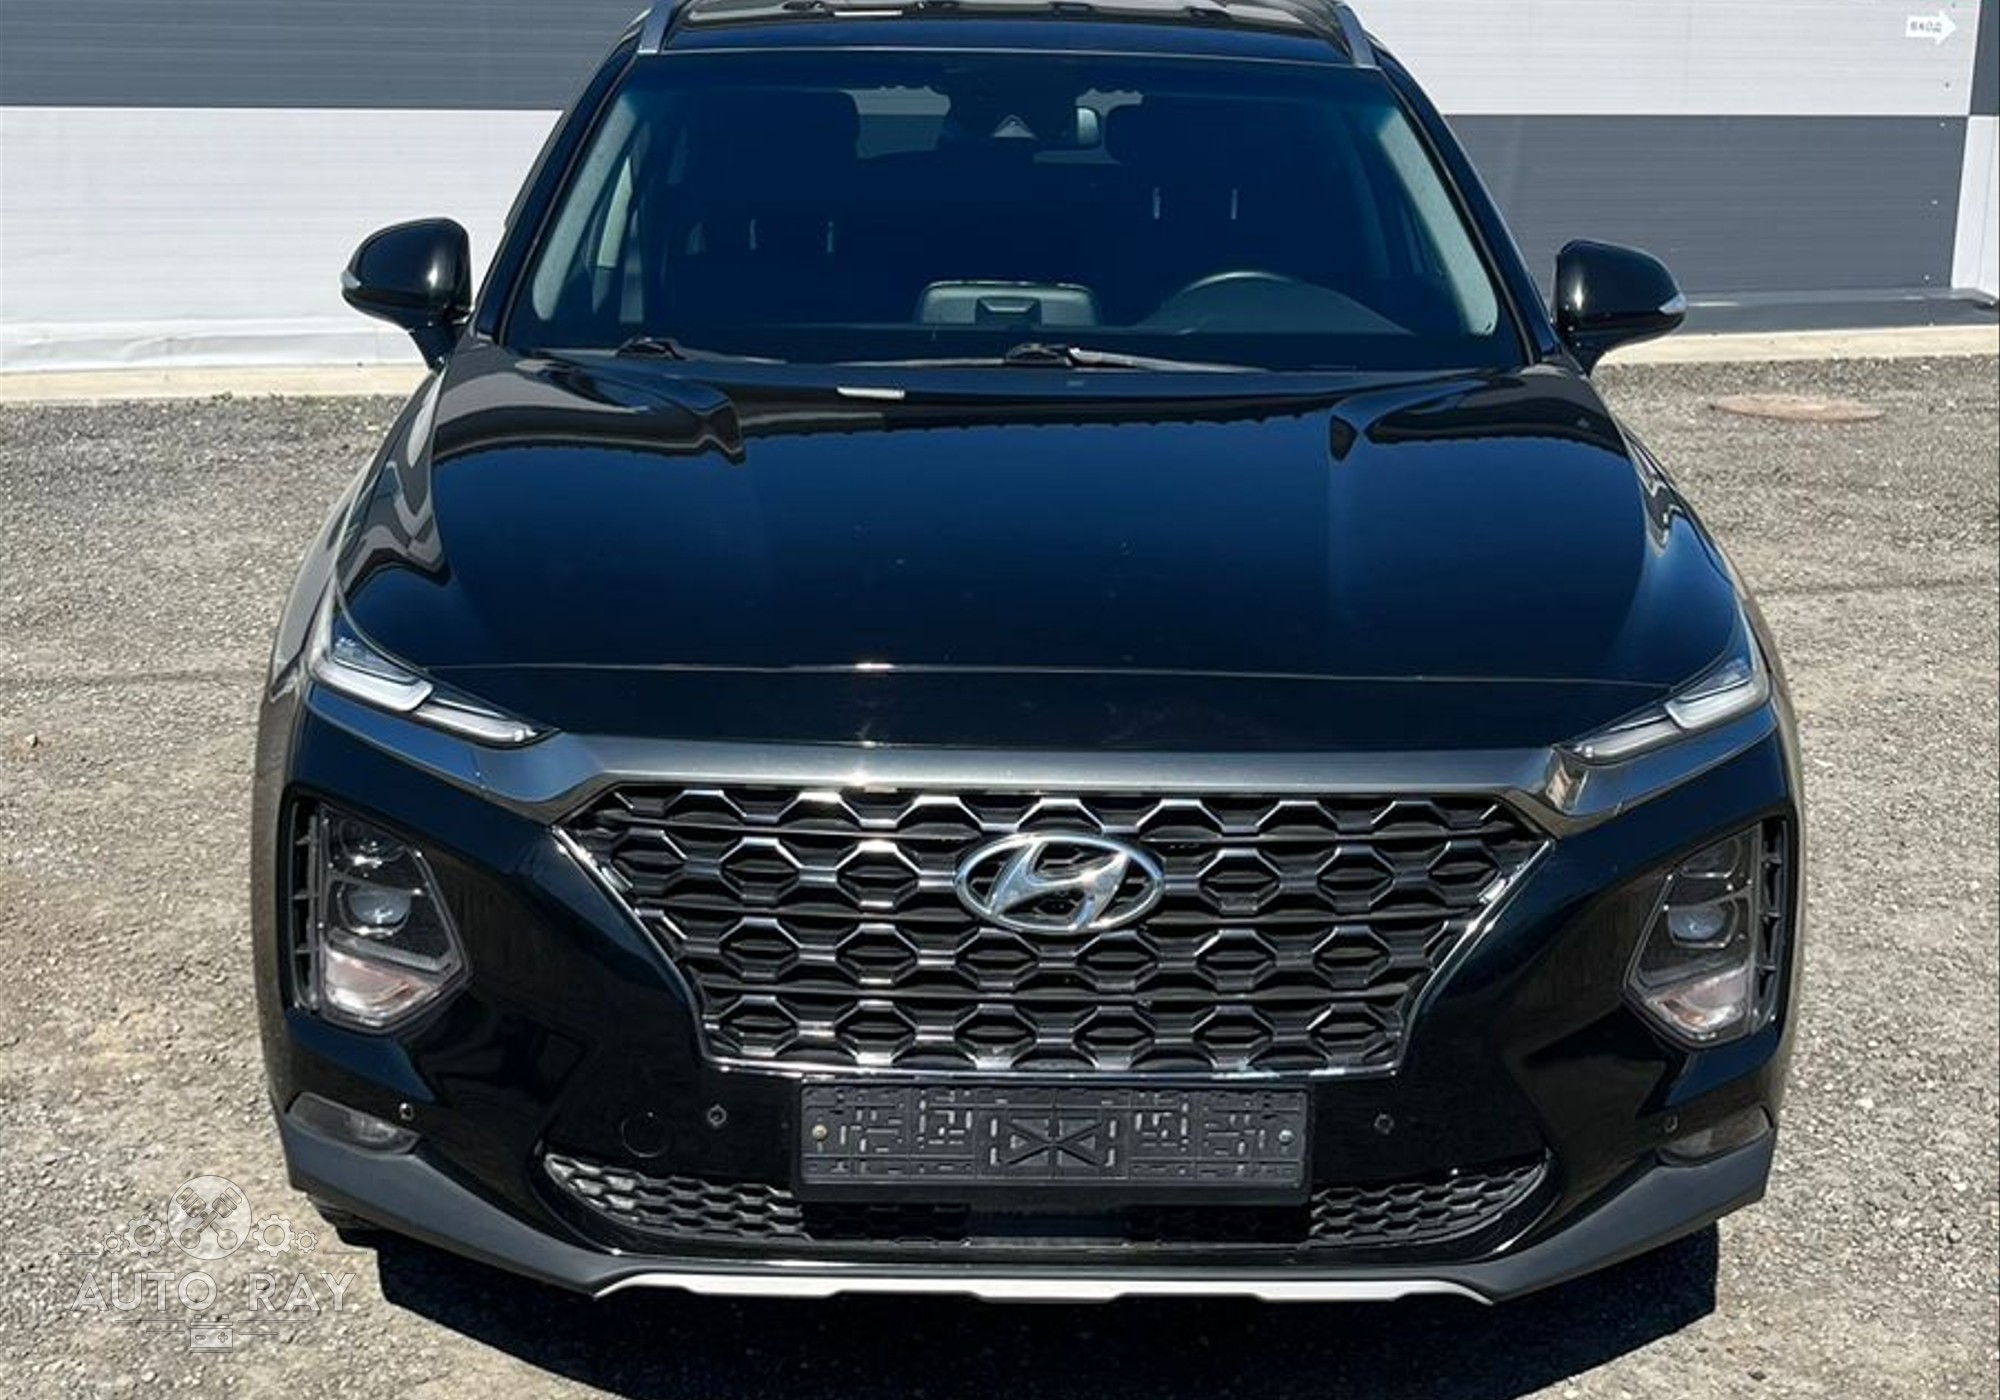 Hyundai Santa Fe IV 2018 г. в разборе